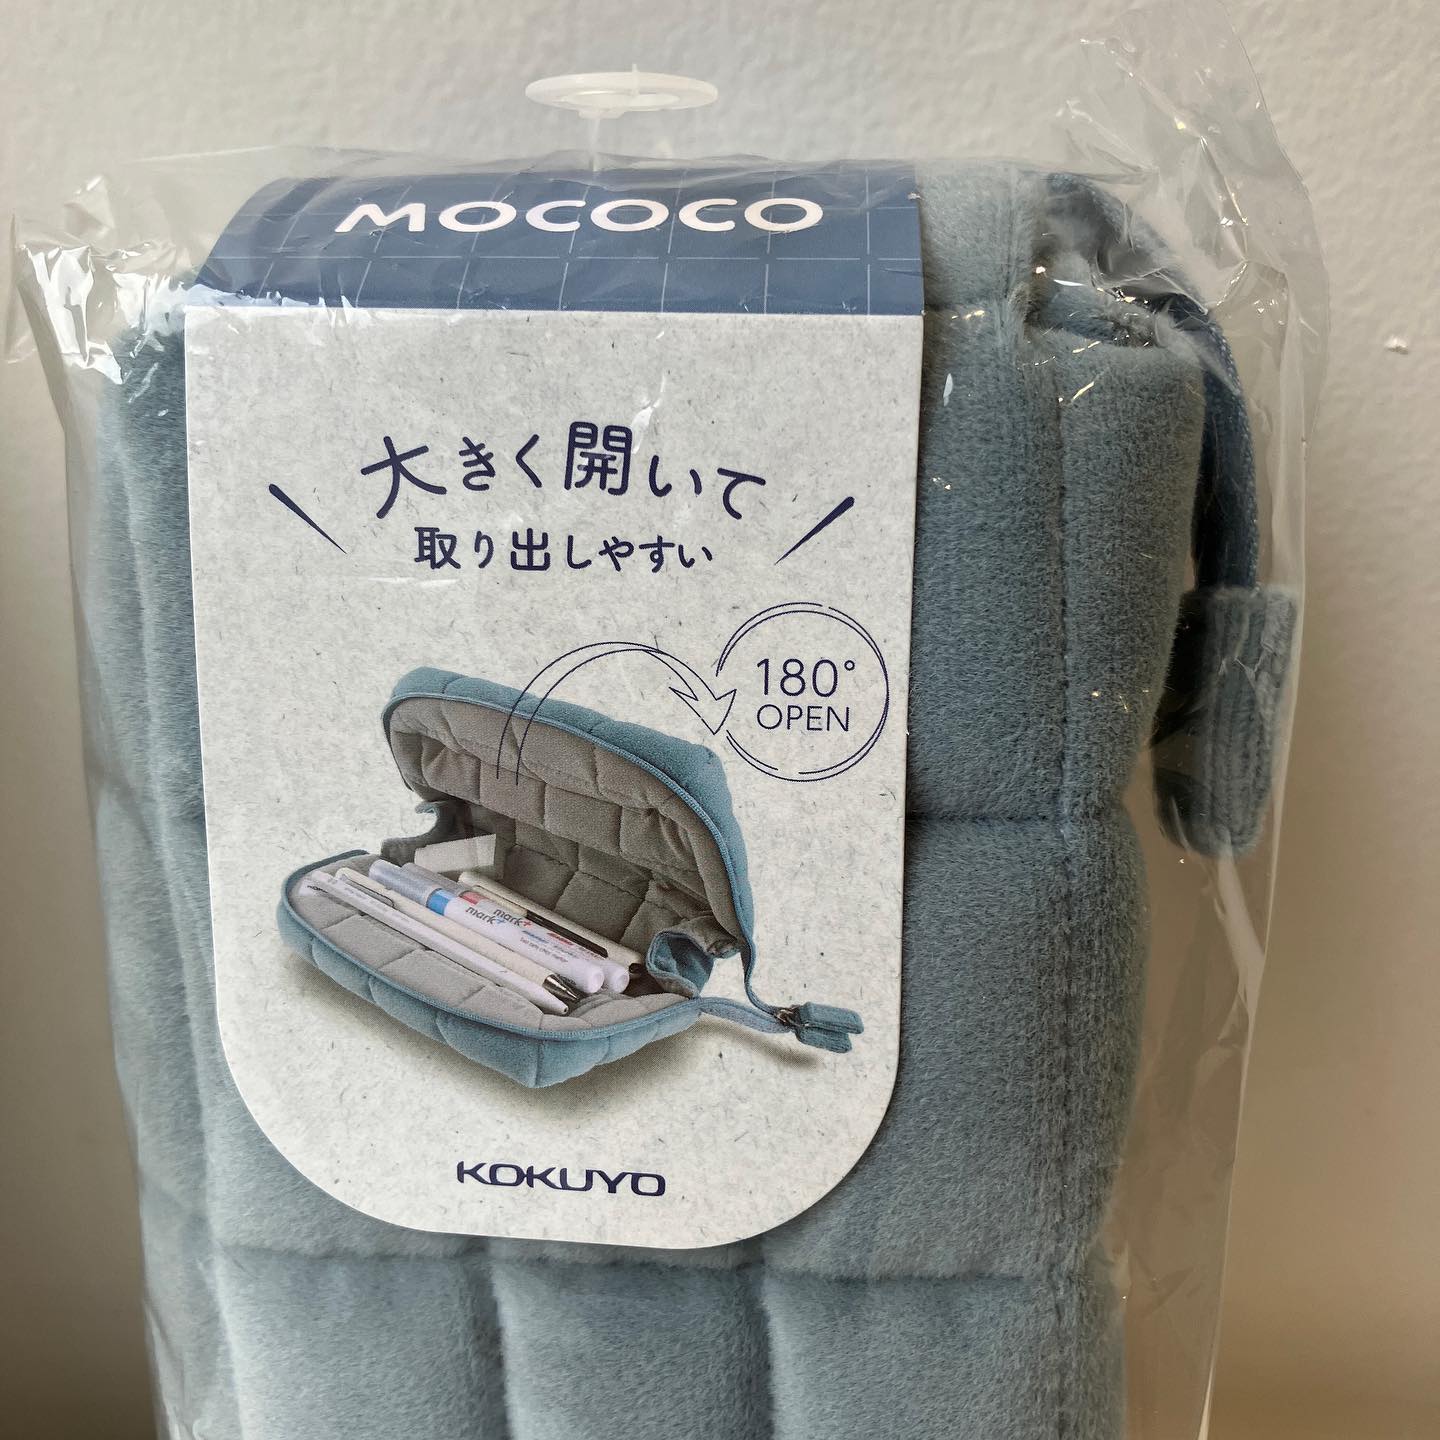 Kokuyo Mococo Pen Case